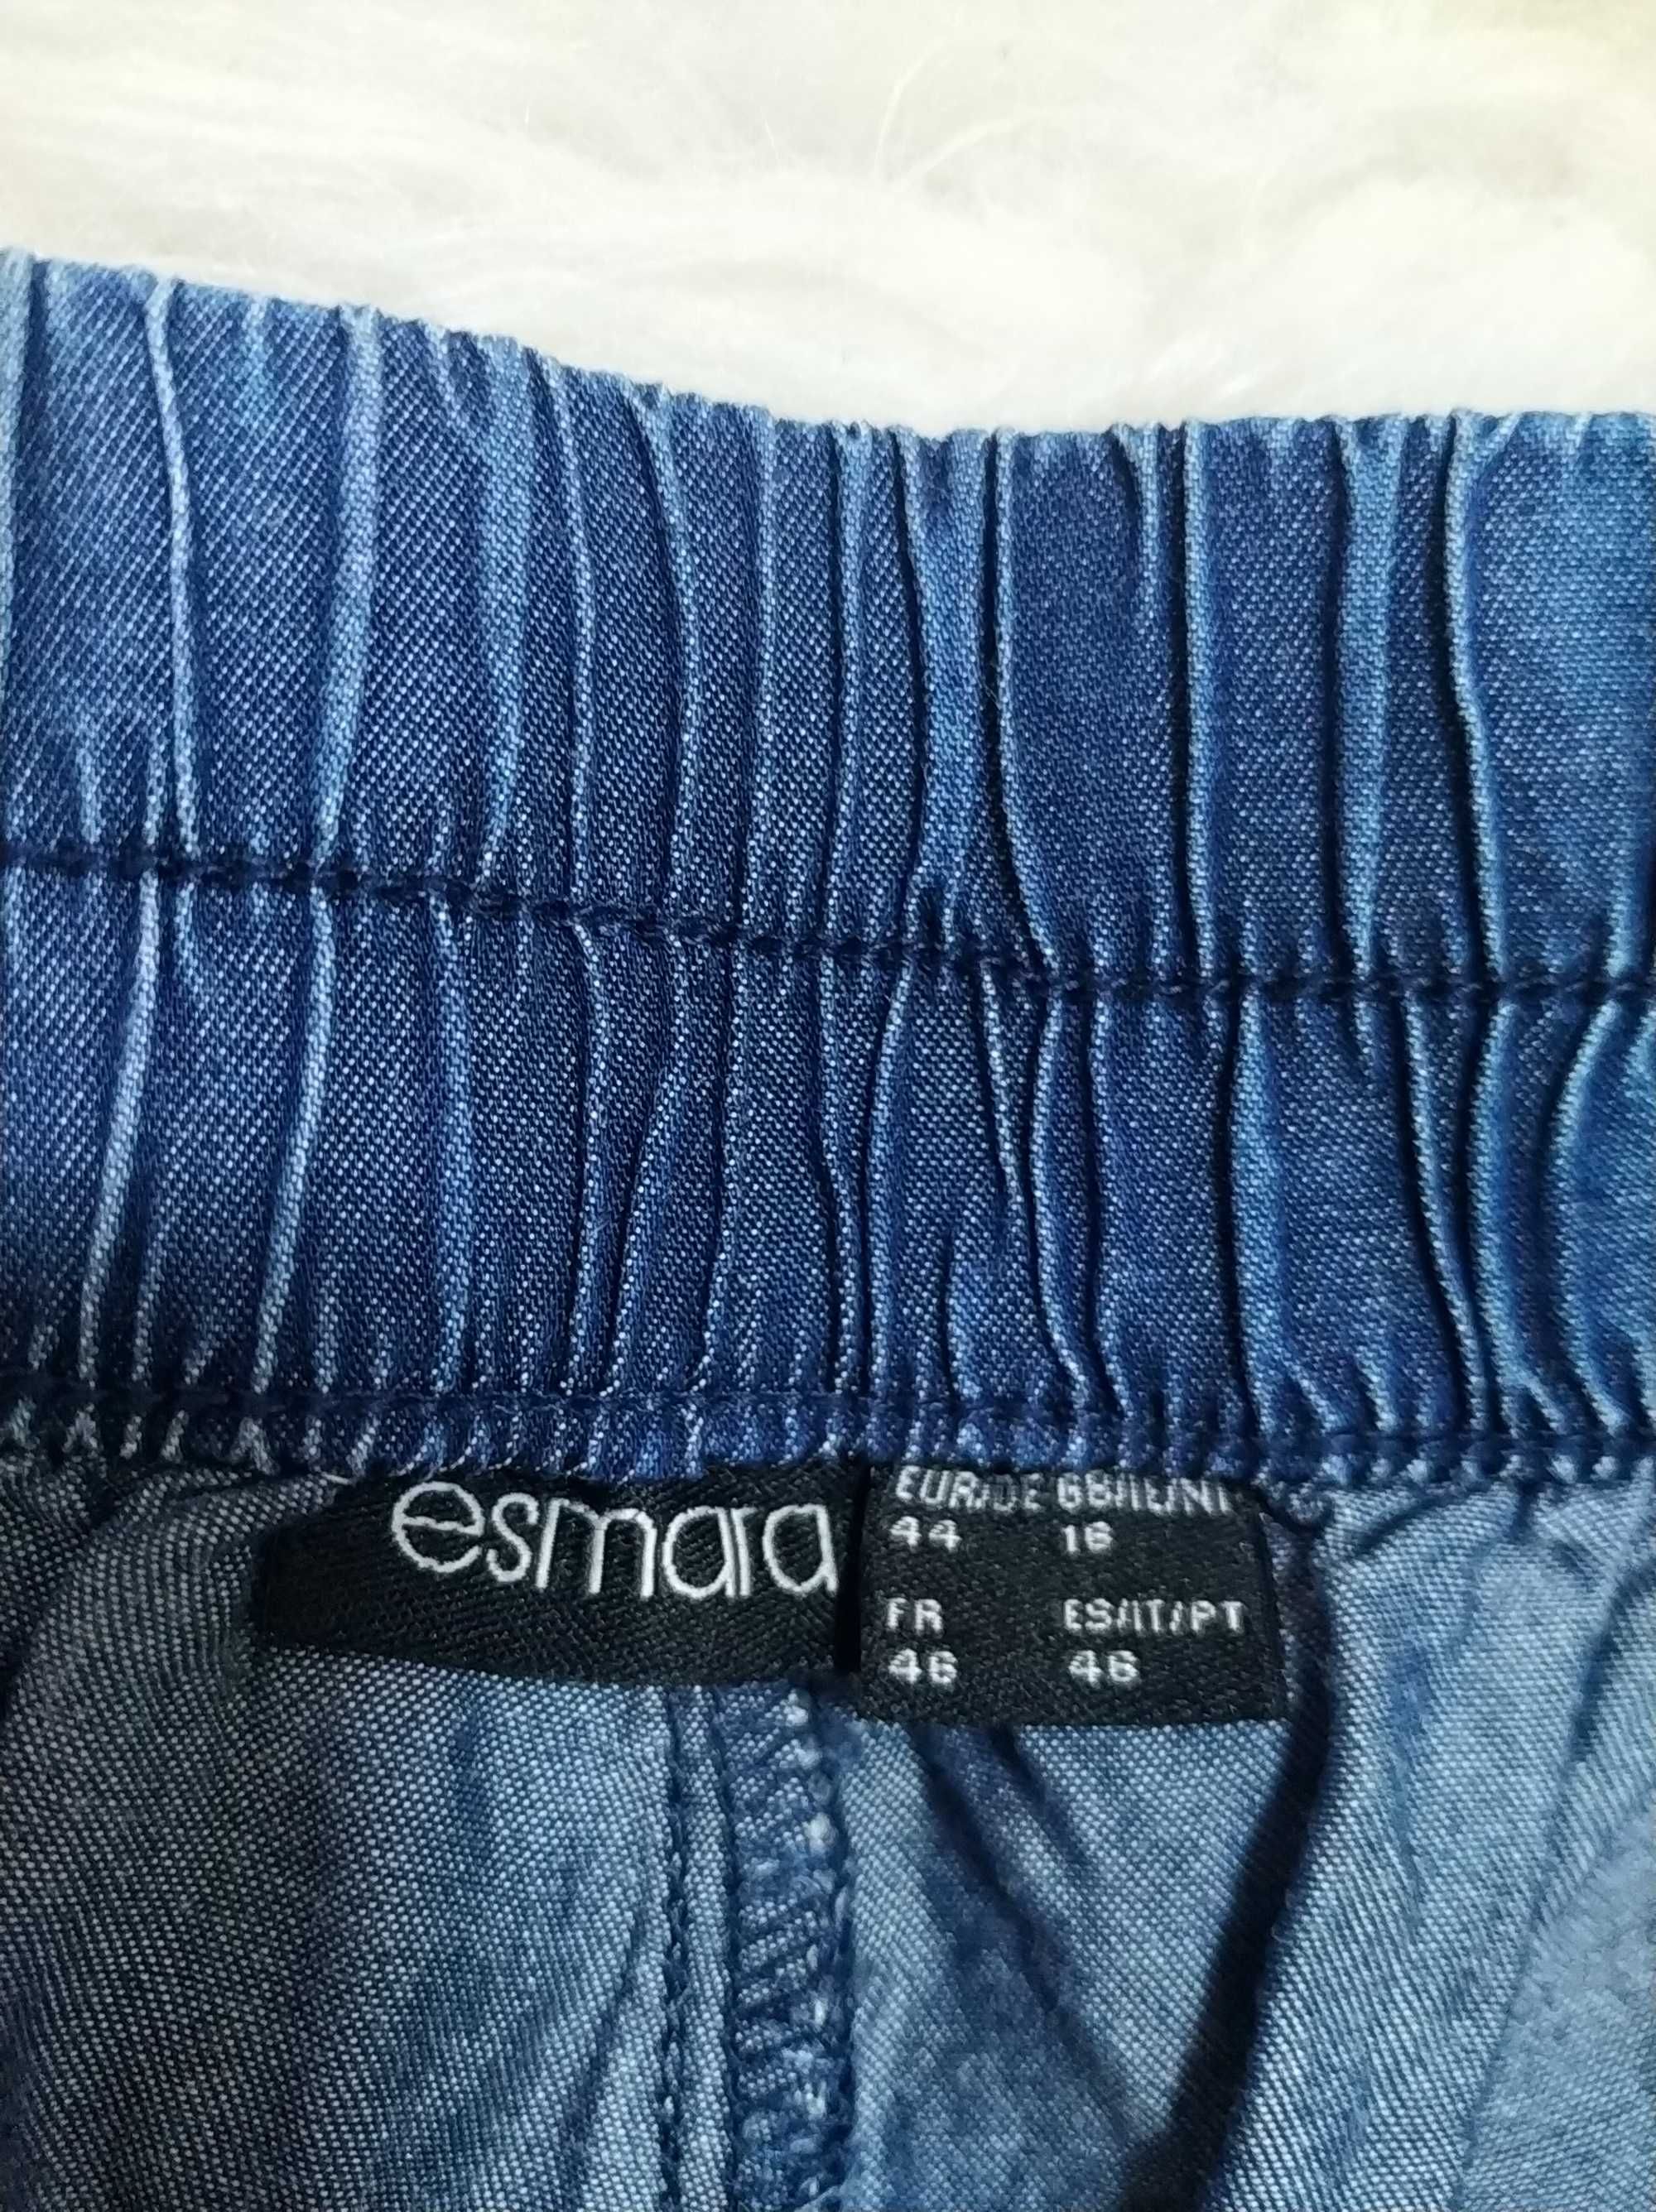 Джинсові,фірмові жіночі шорти 46-48 р-Esmara